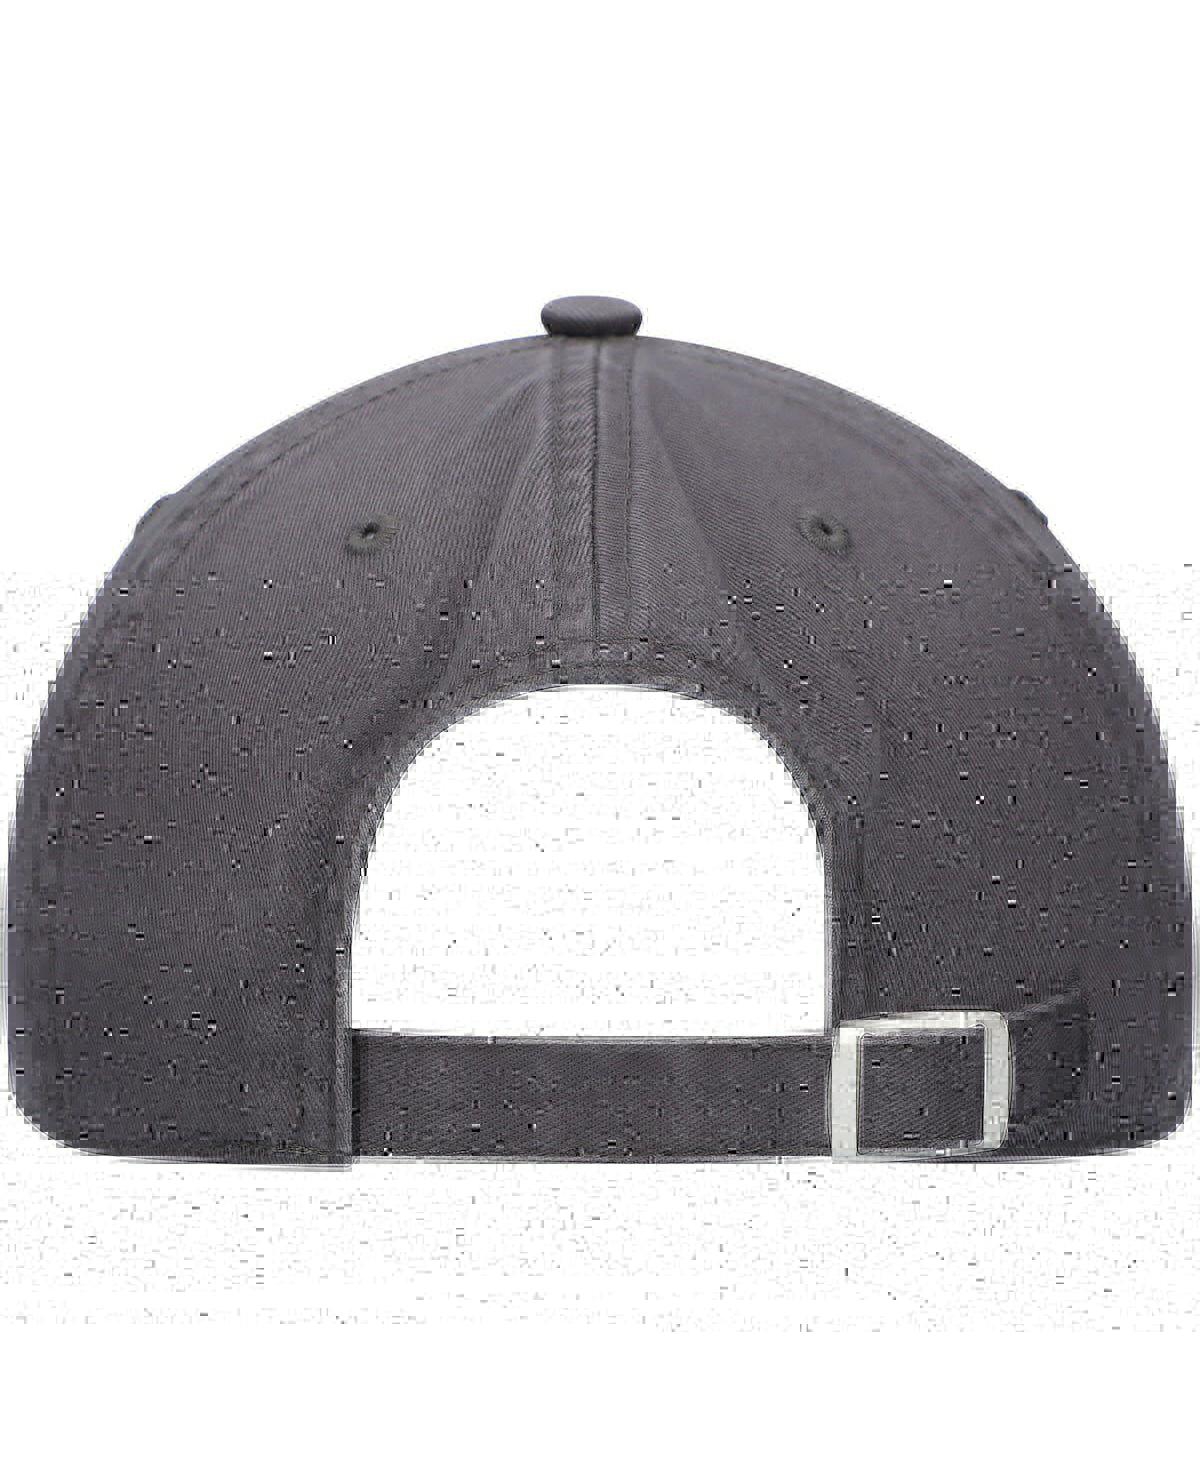 Shop Top Of The World Men's  Charcoal Northwestern Wildcats Slice Adjustable Hat